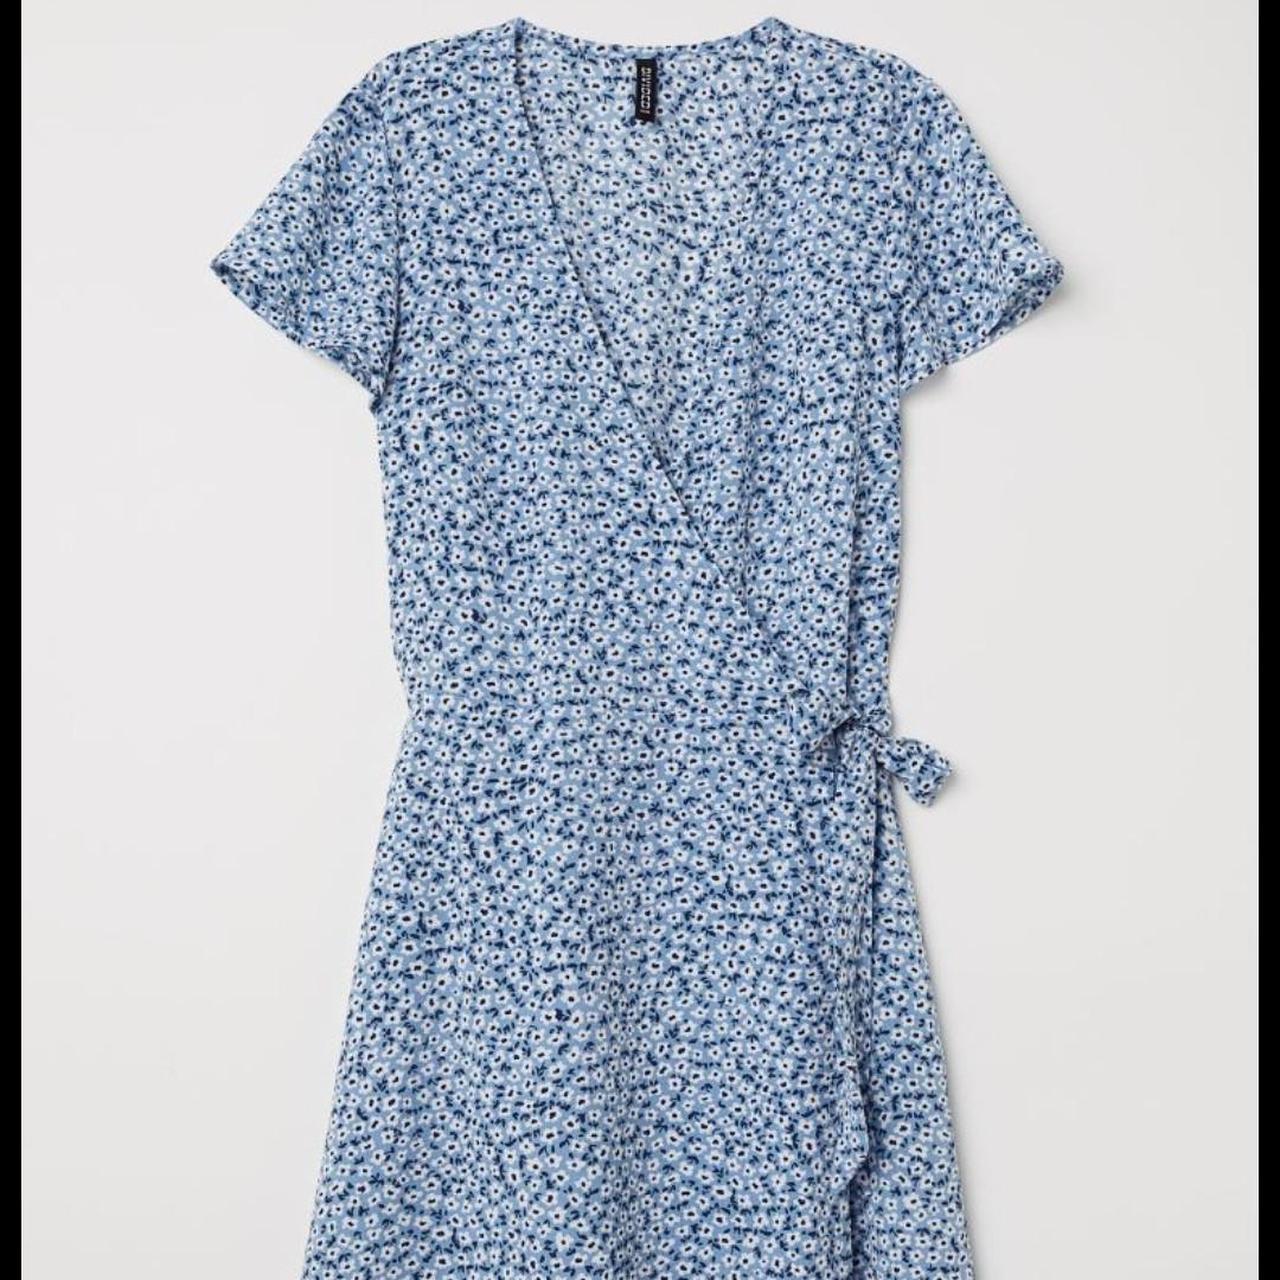 Hm floral light blue wrap dress size 6 - Depop